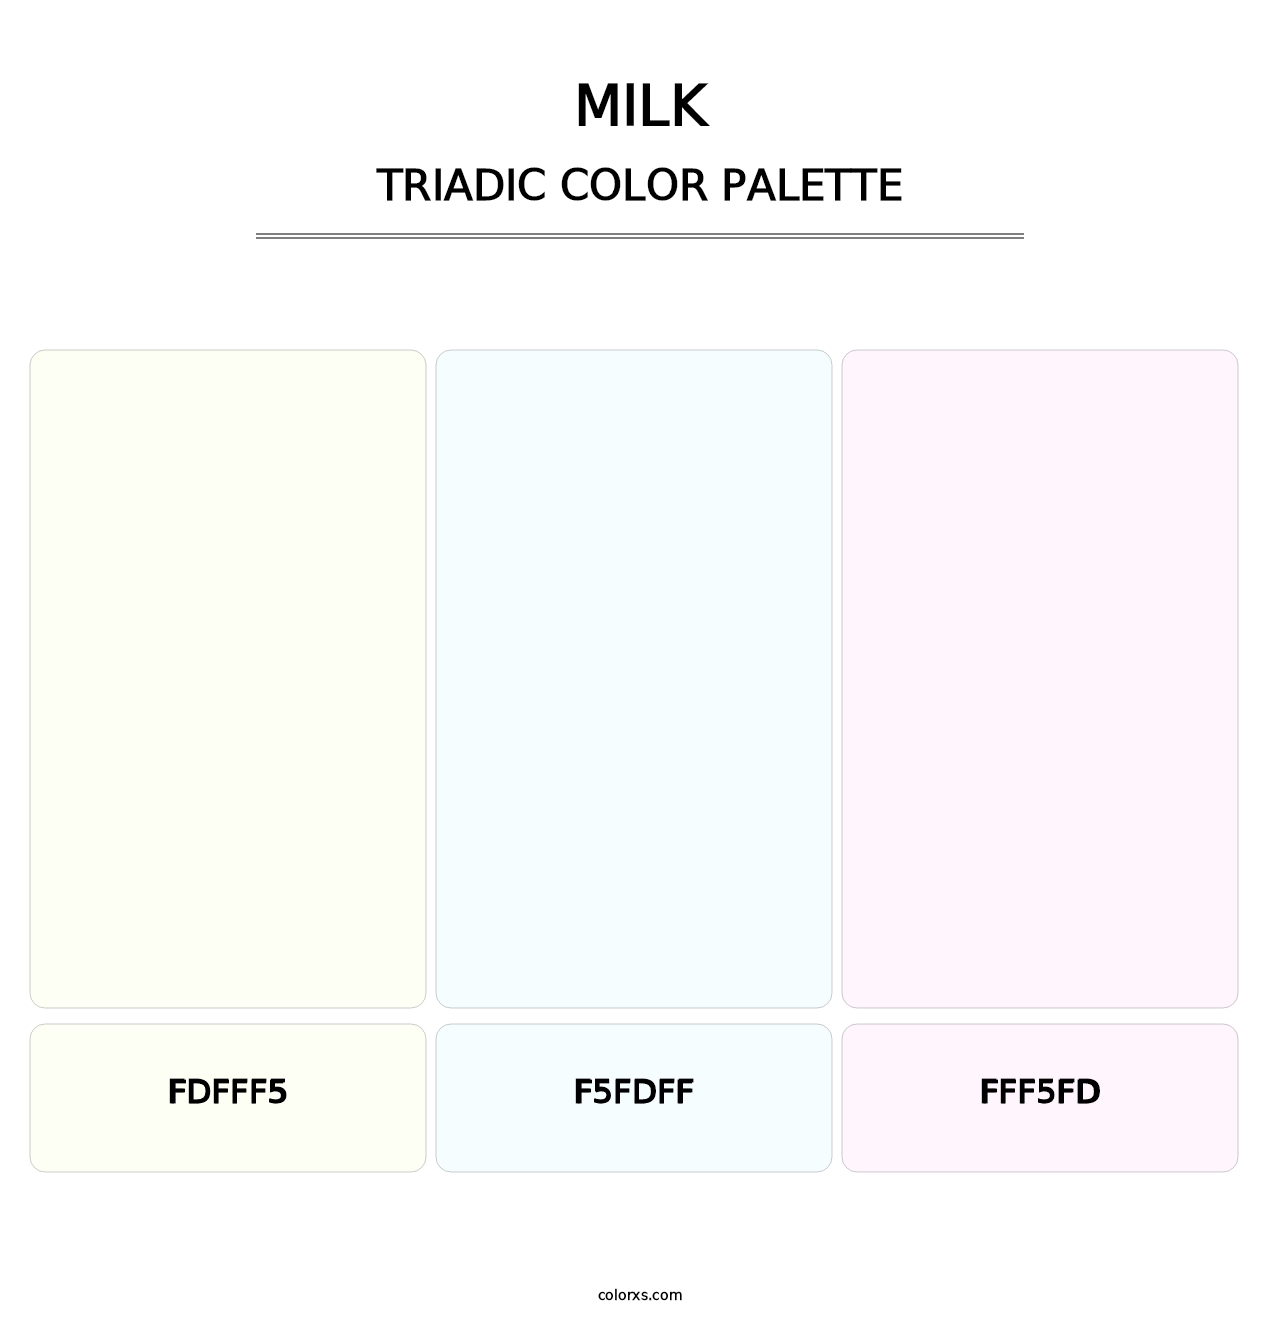 Milk - Triadic Color Palette